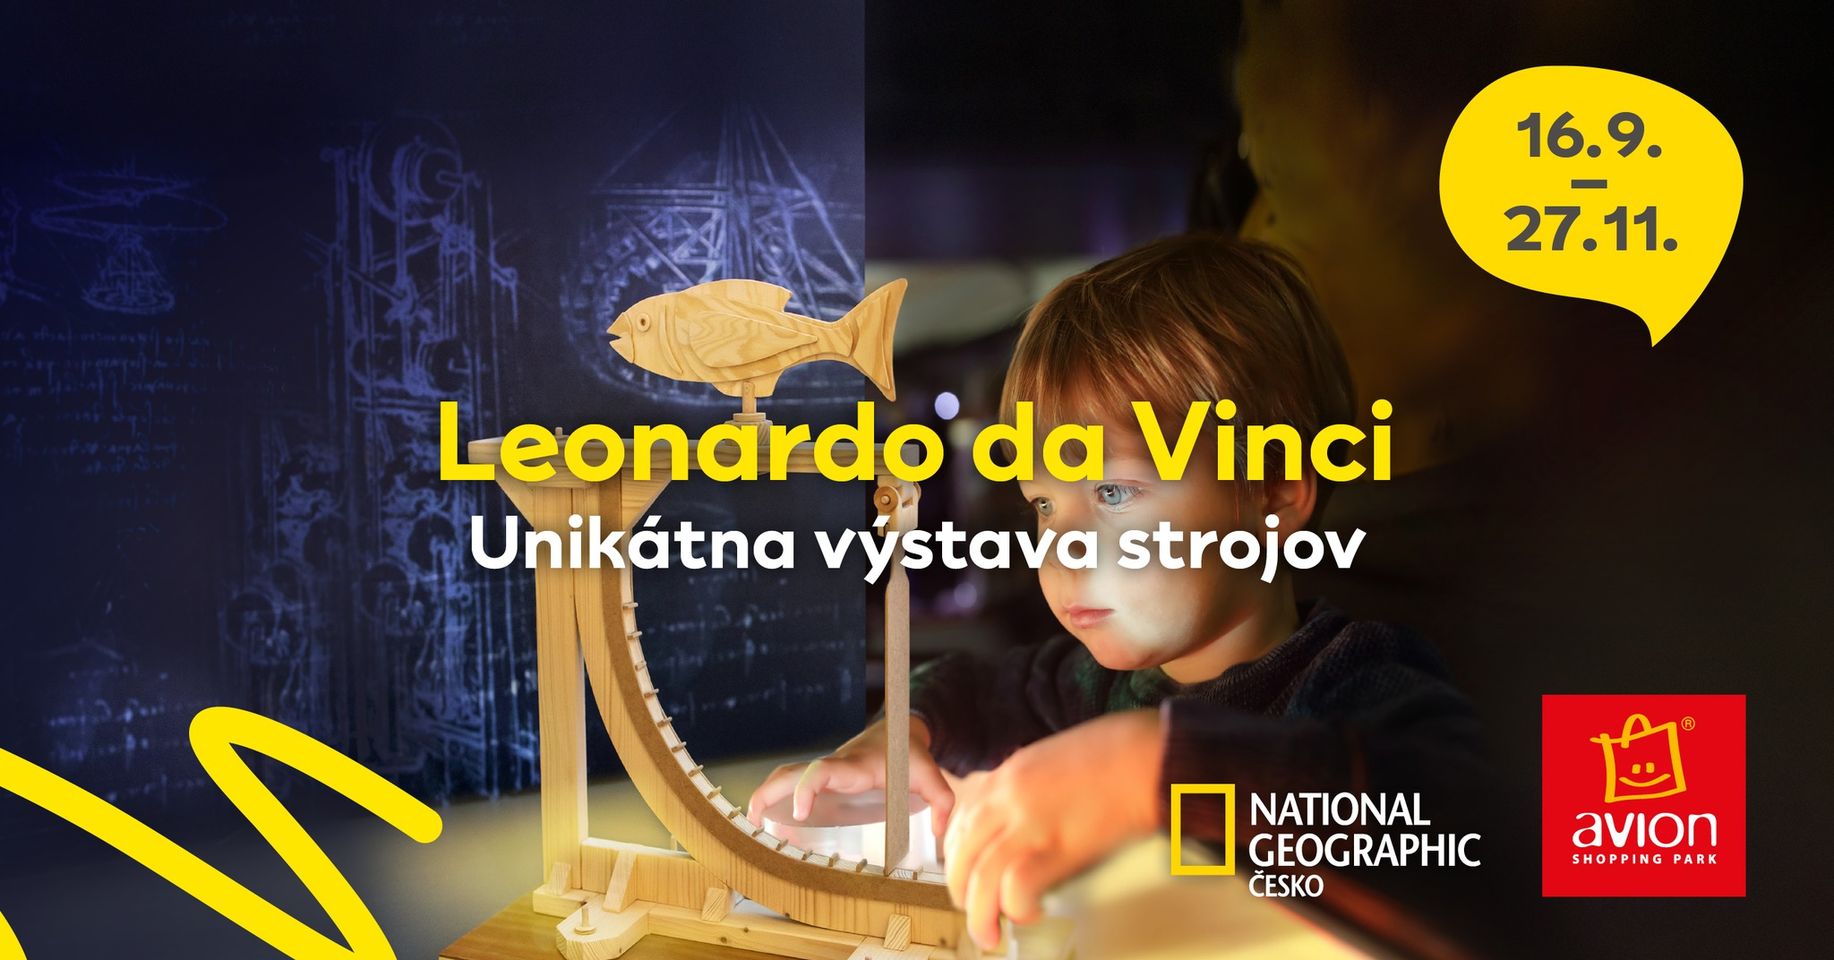 Uniktna vstava strojov Leonarda da Vinciho 2022 Bratislava